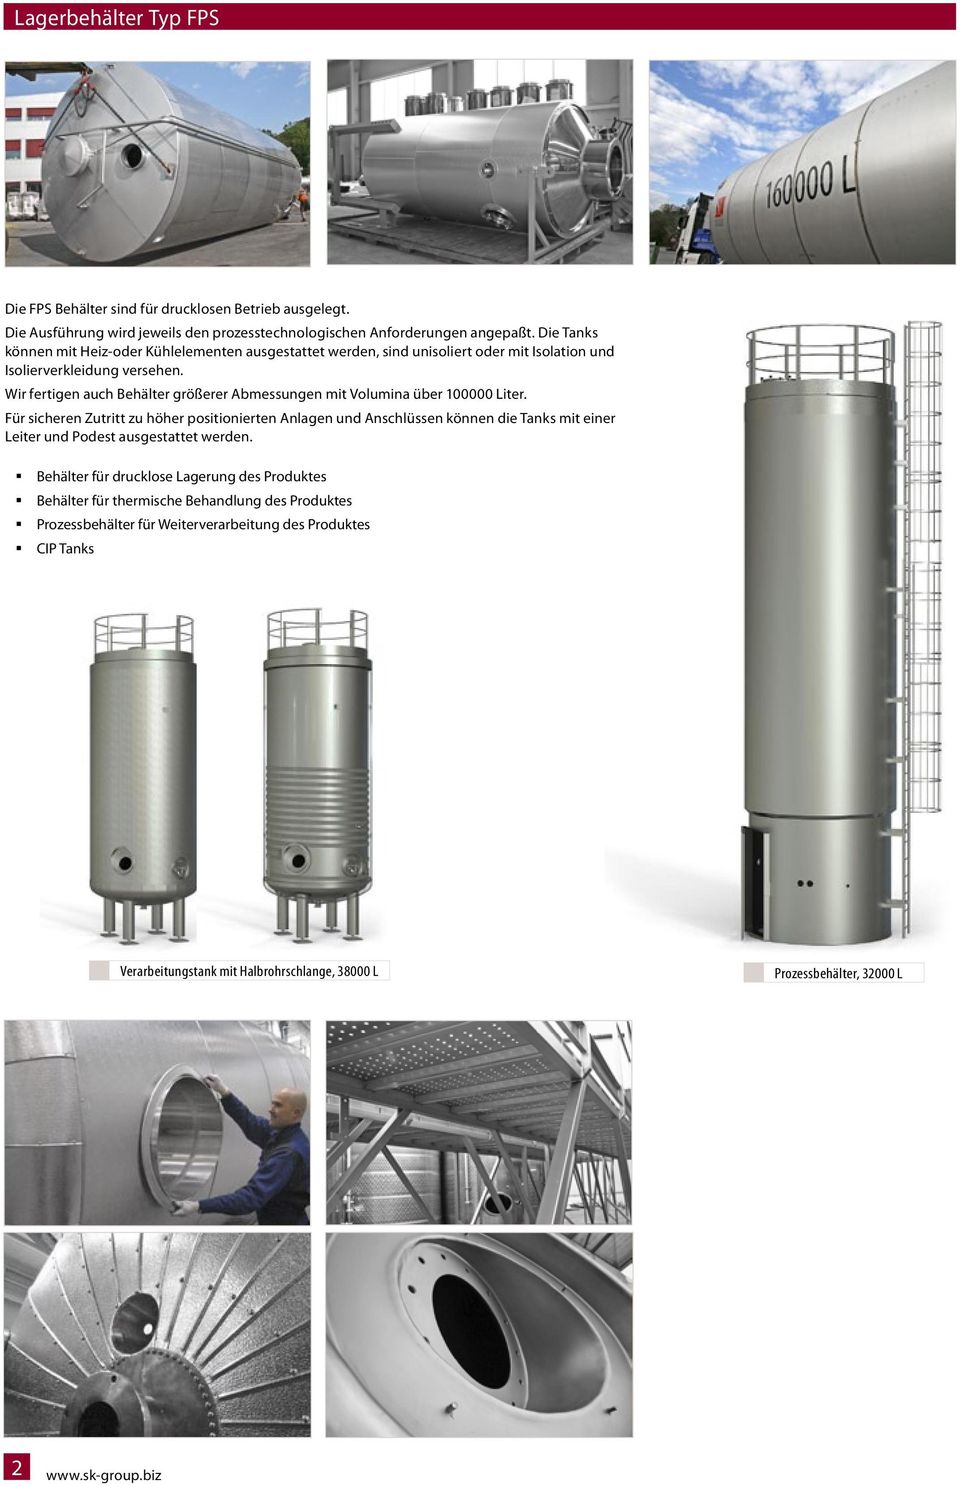 Wir fertigen auch Behälter größerer Abmessungen mit Volumina über 100000 Liter.